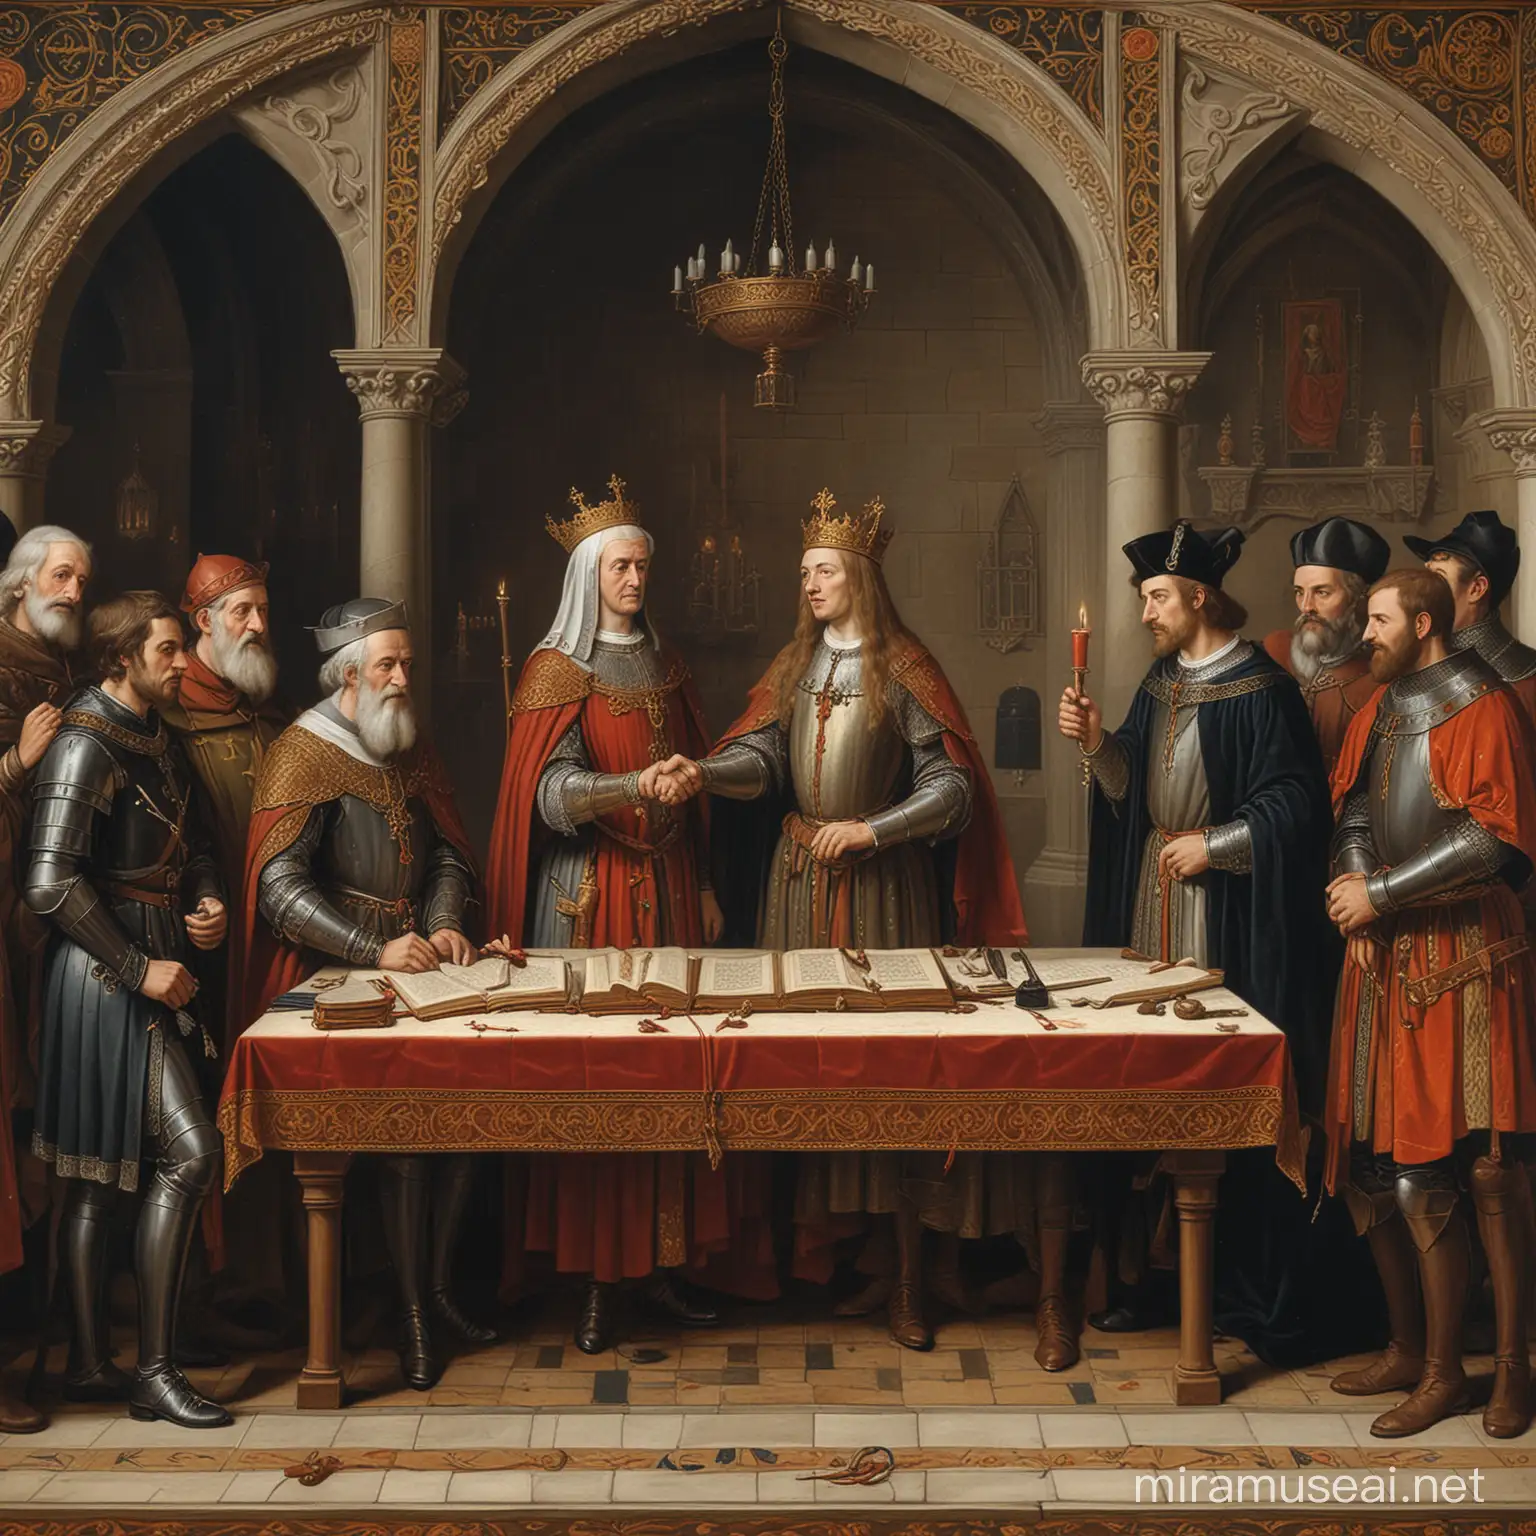 Pintura medieval, gótica, de um tratado sendo assinado